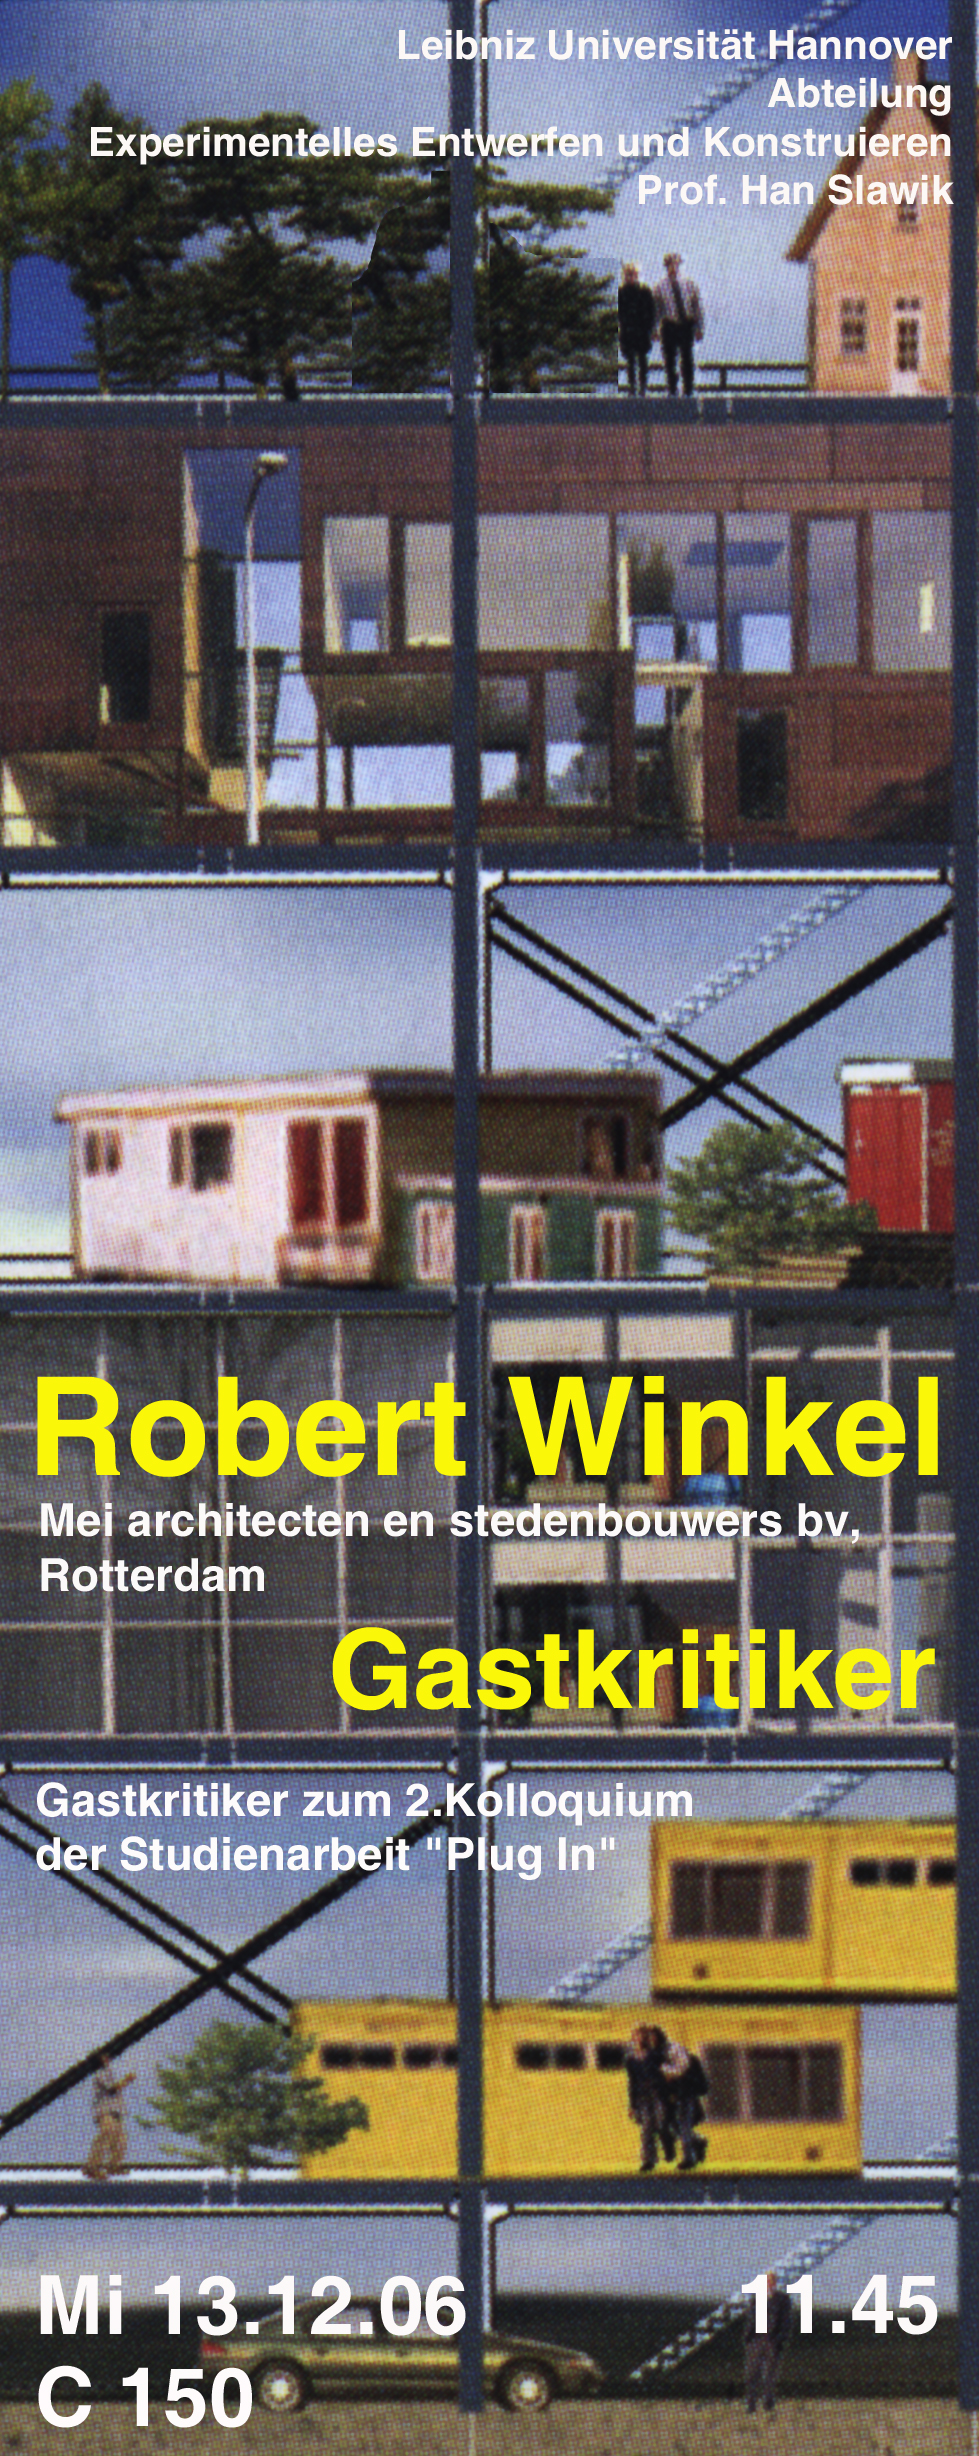 06 07 WS Winkel Plakat